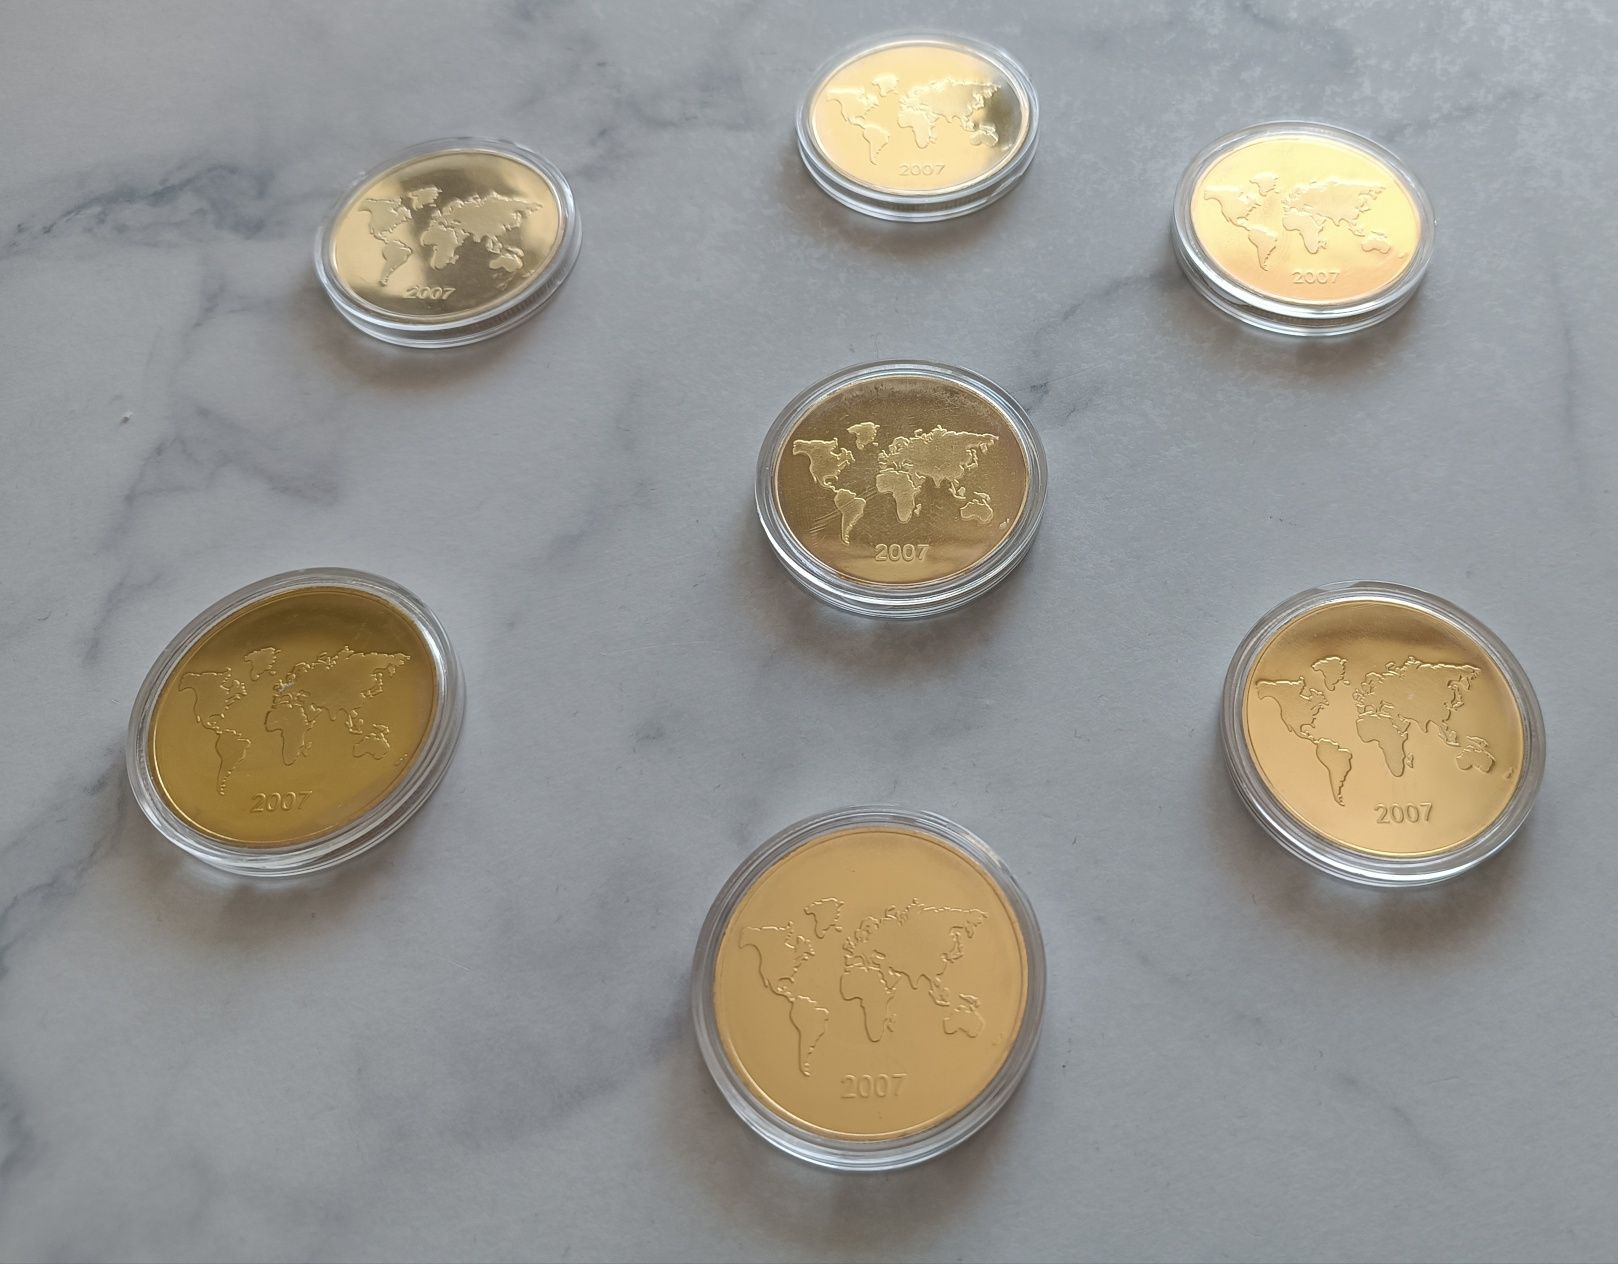 Piękna kolekcja monet - siedem współczesnych cudów świata.